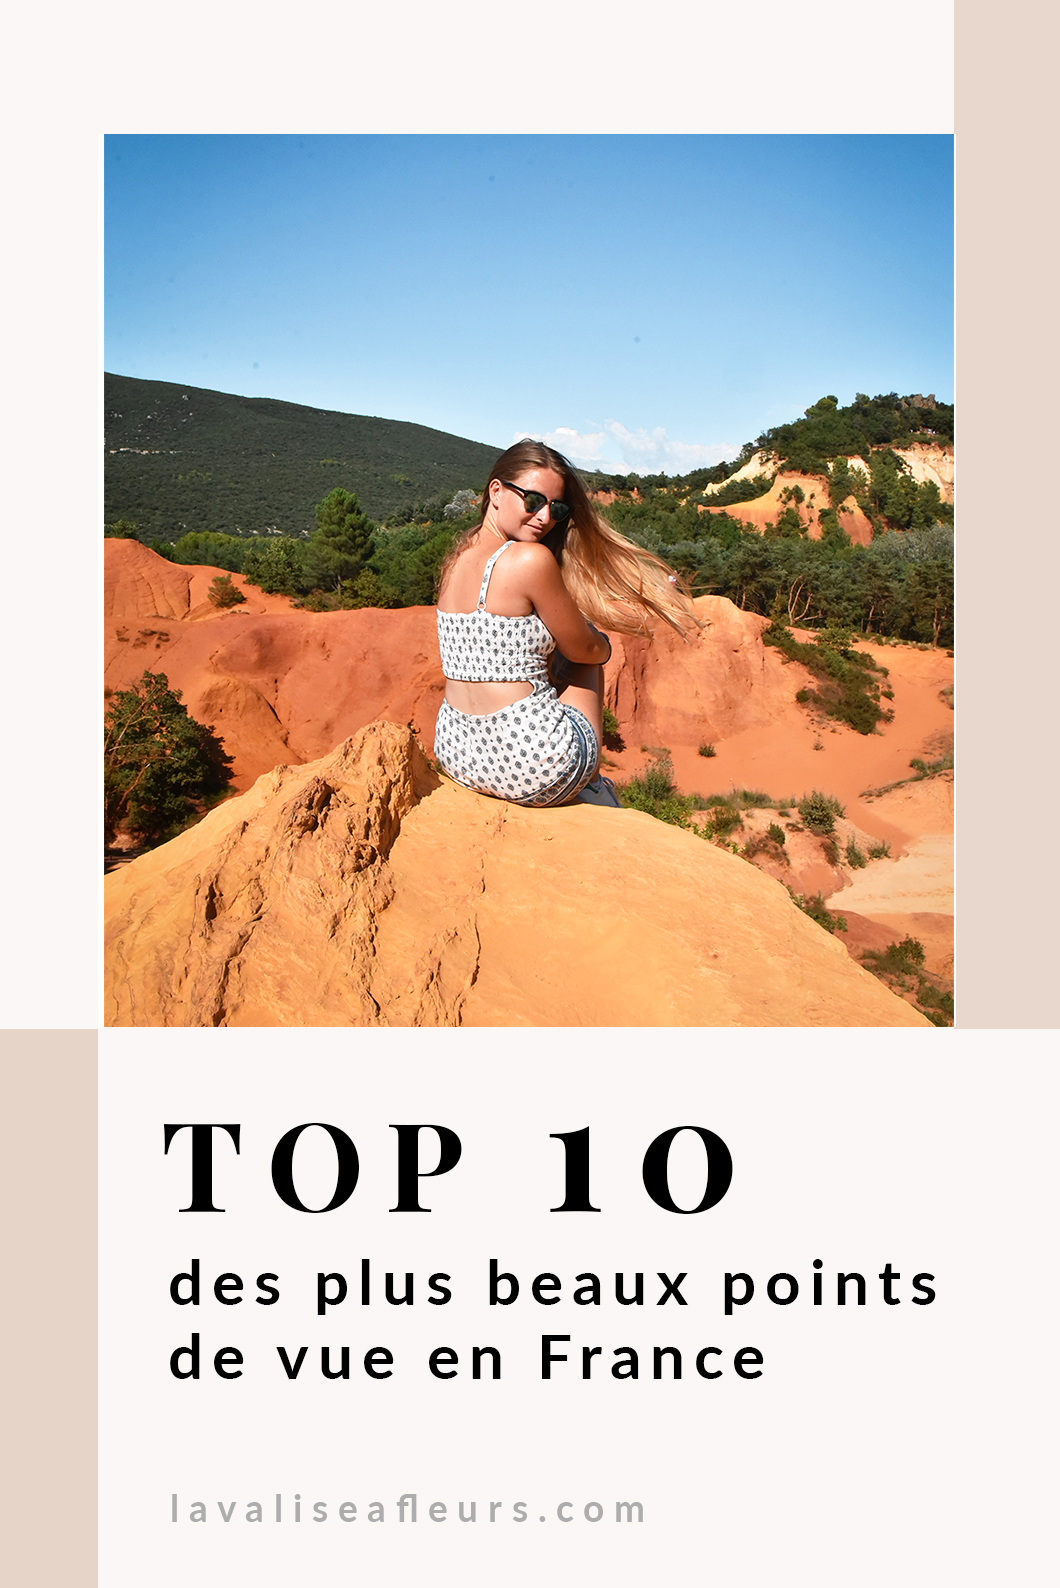 Top 10 des plus beaux points de vue en France